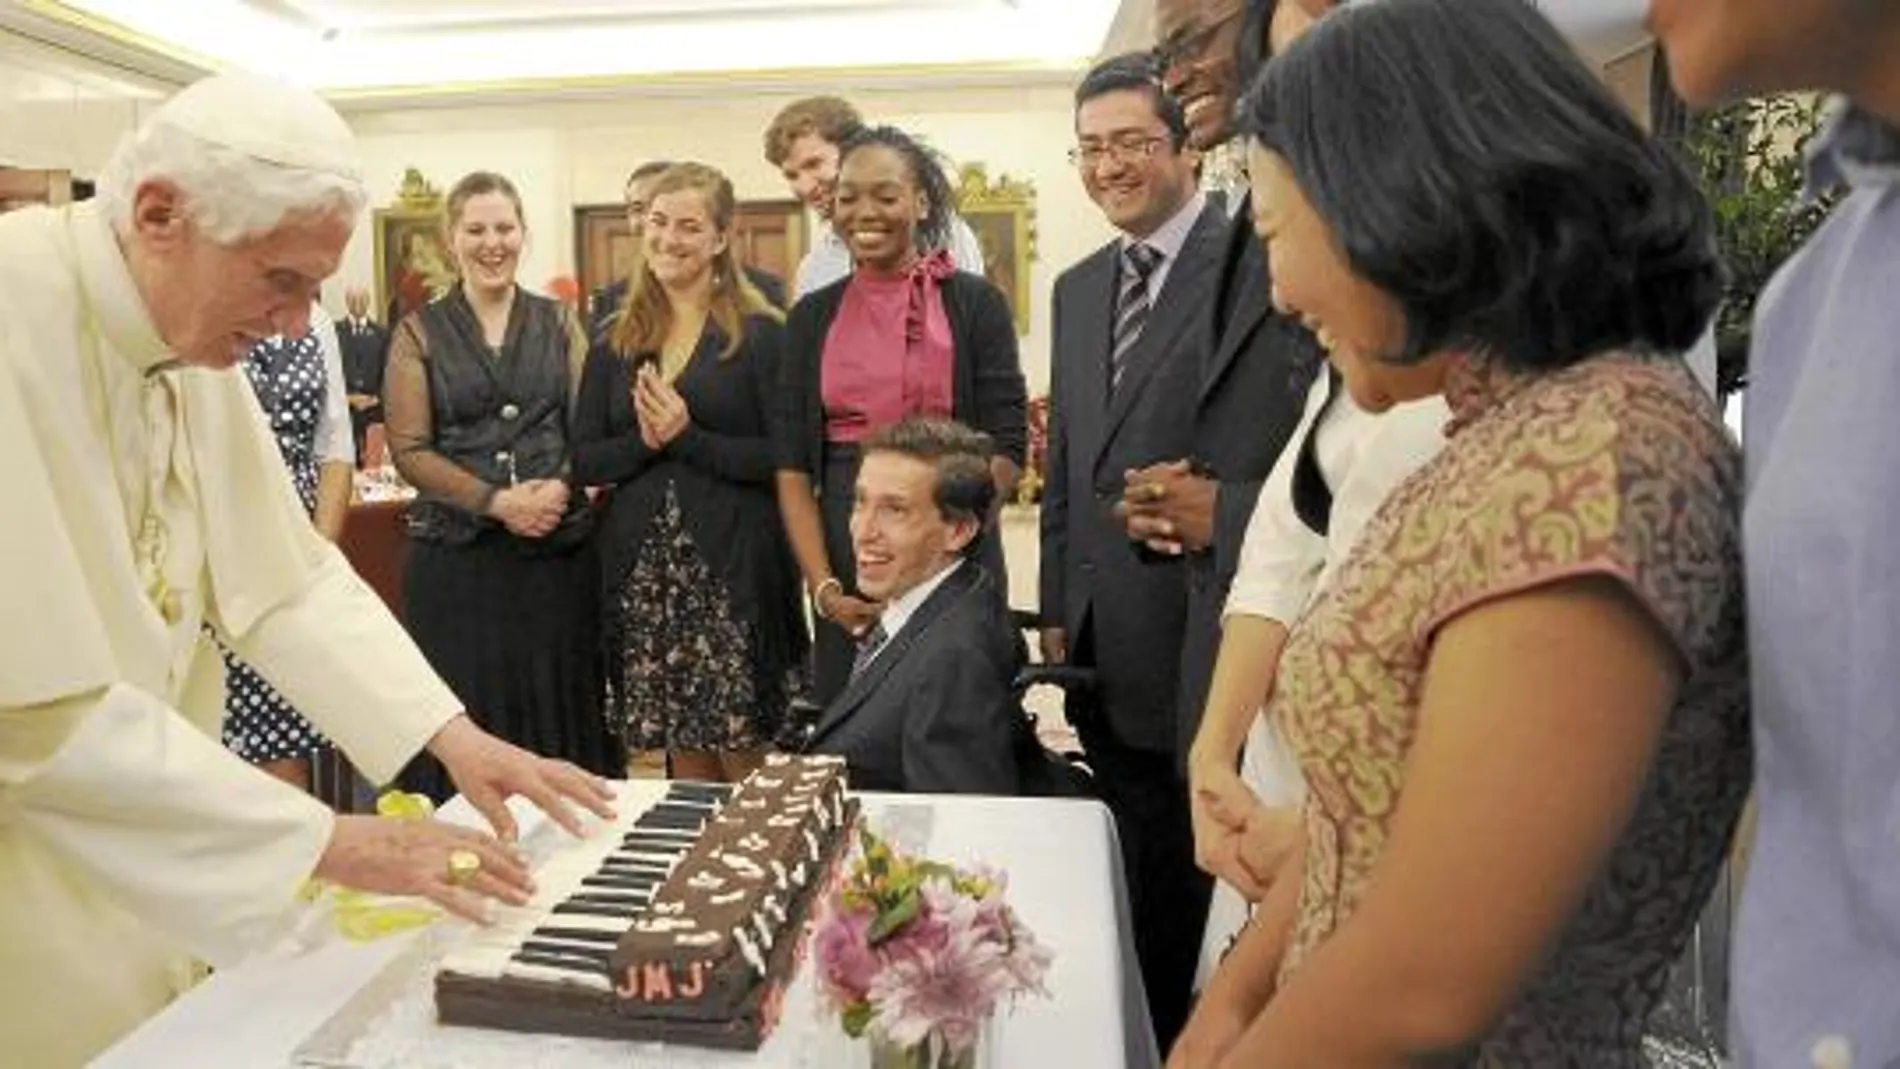 Los jóvenes le regalaron una tarta de chocolate en forma de piano